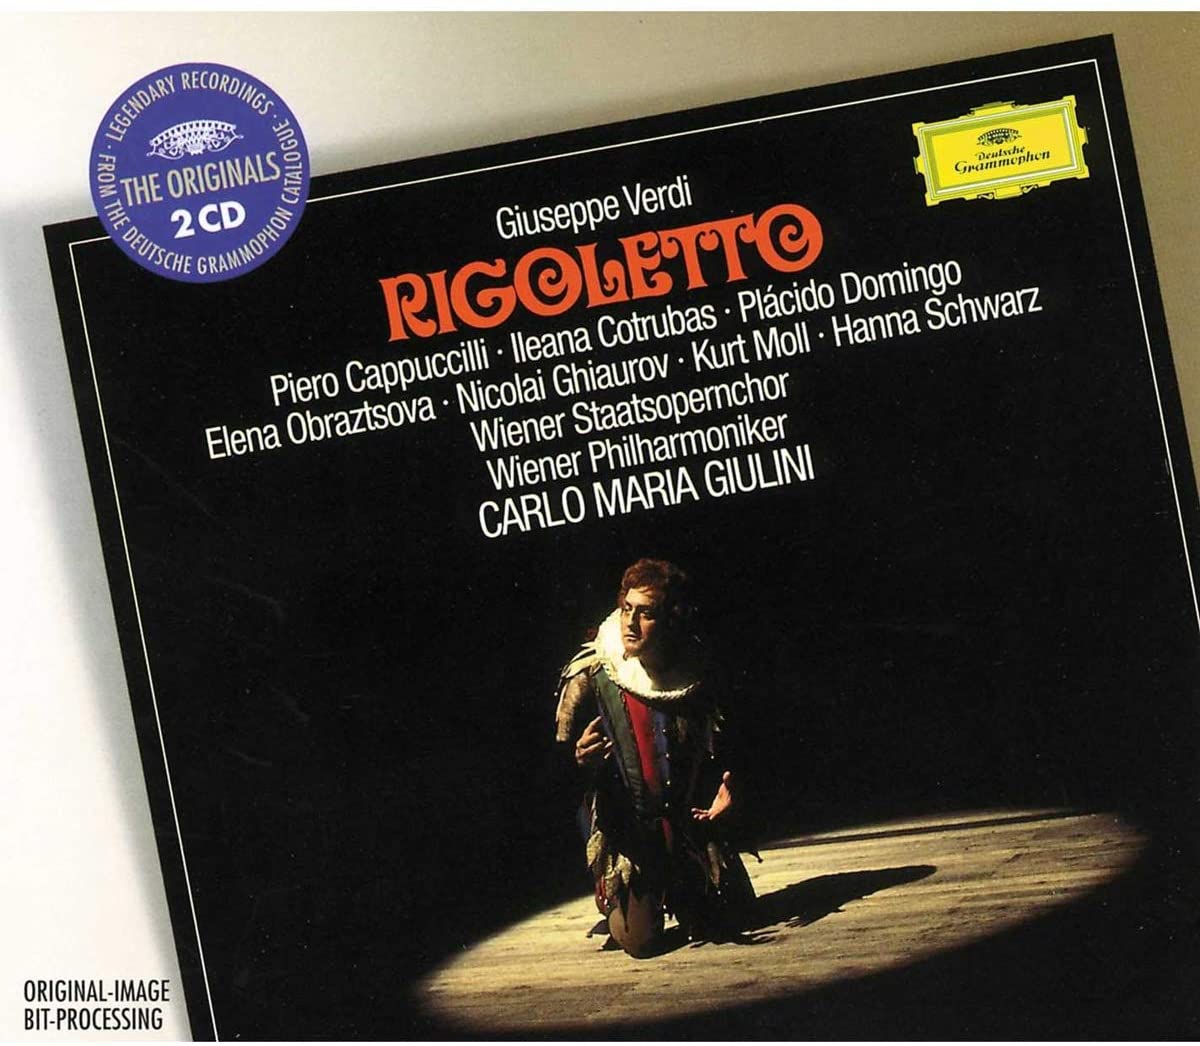 Verdi: Rigoletto | Piero Cappuccilli, Ileana Cotrubas, Placido Domingo, Wiener Staatsopernchor, Wiener Philharmoniker, Carlo Maria Giulini image